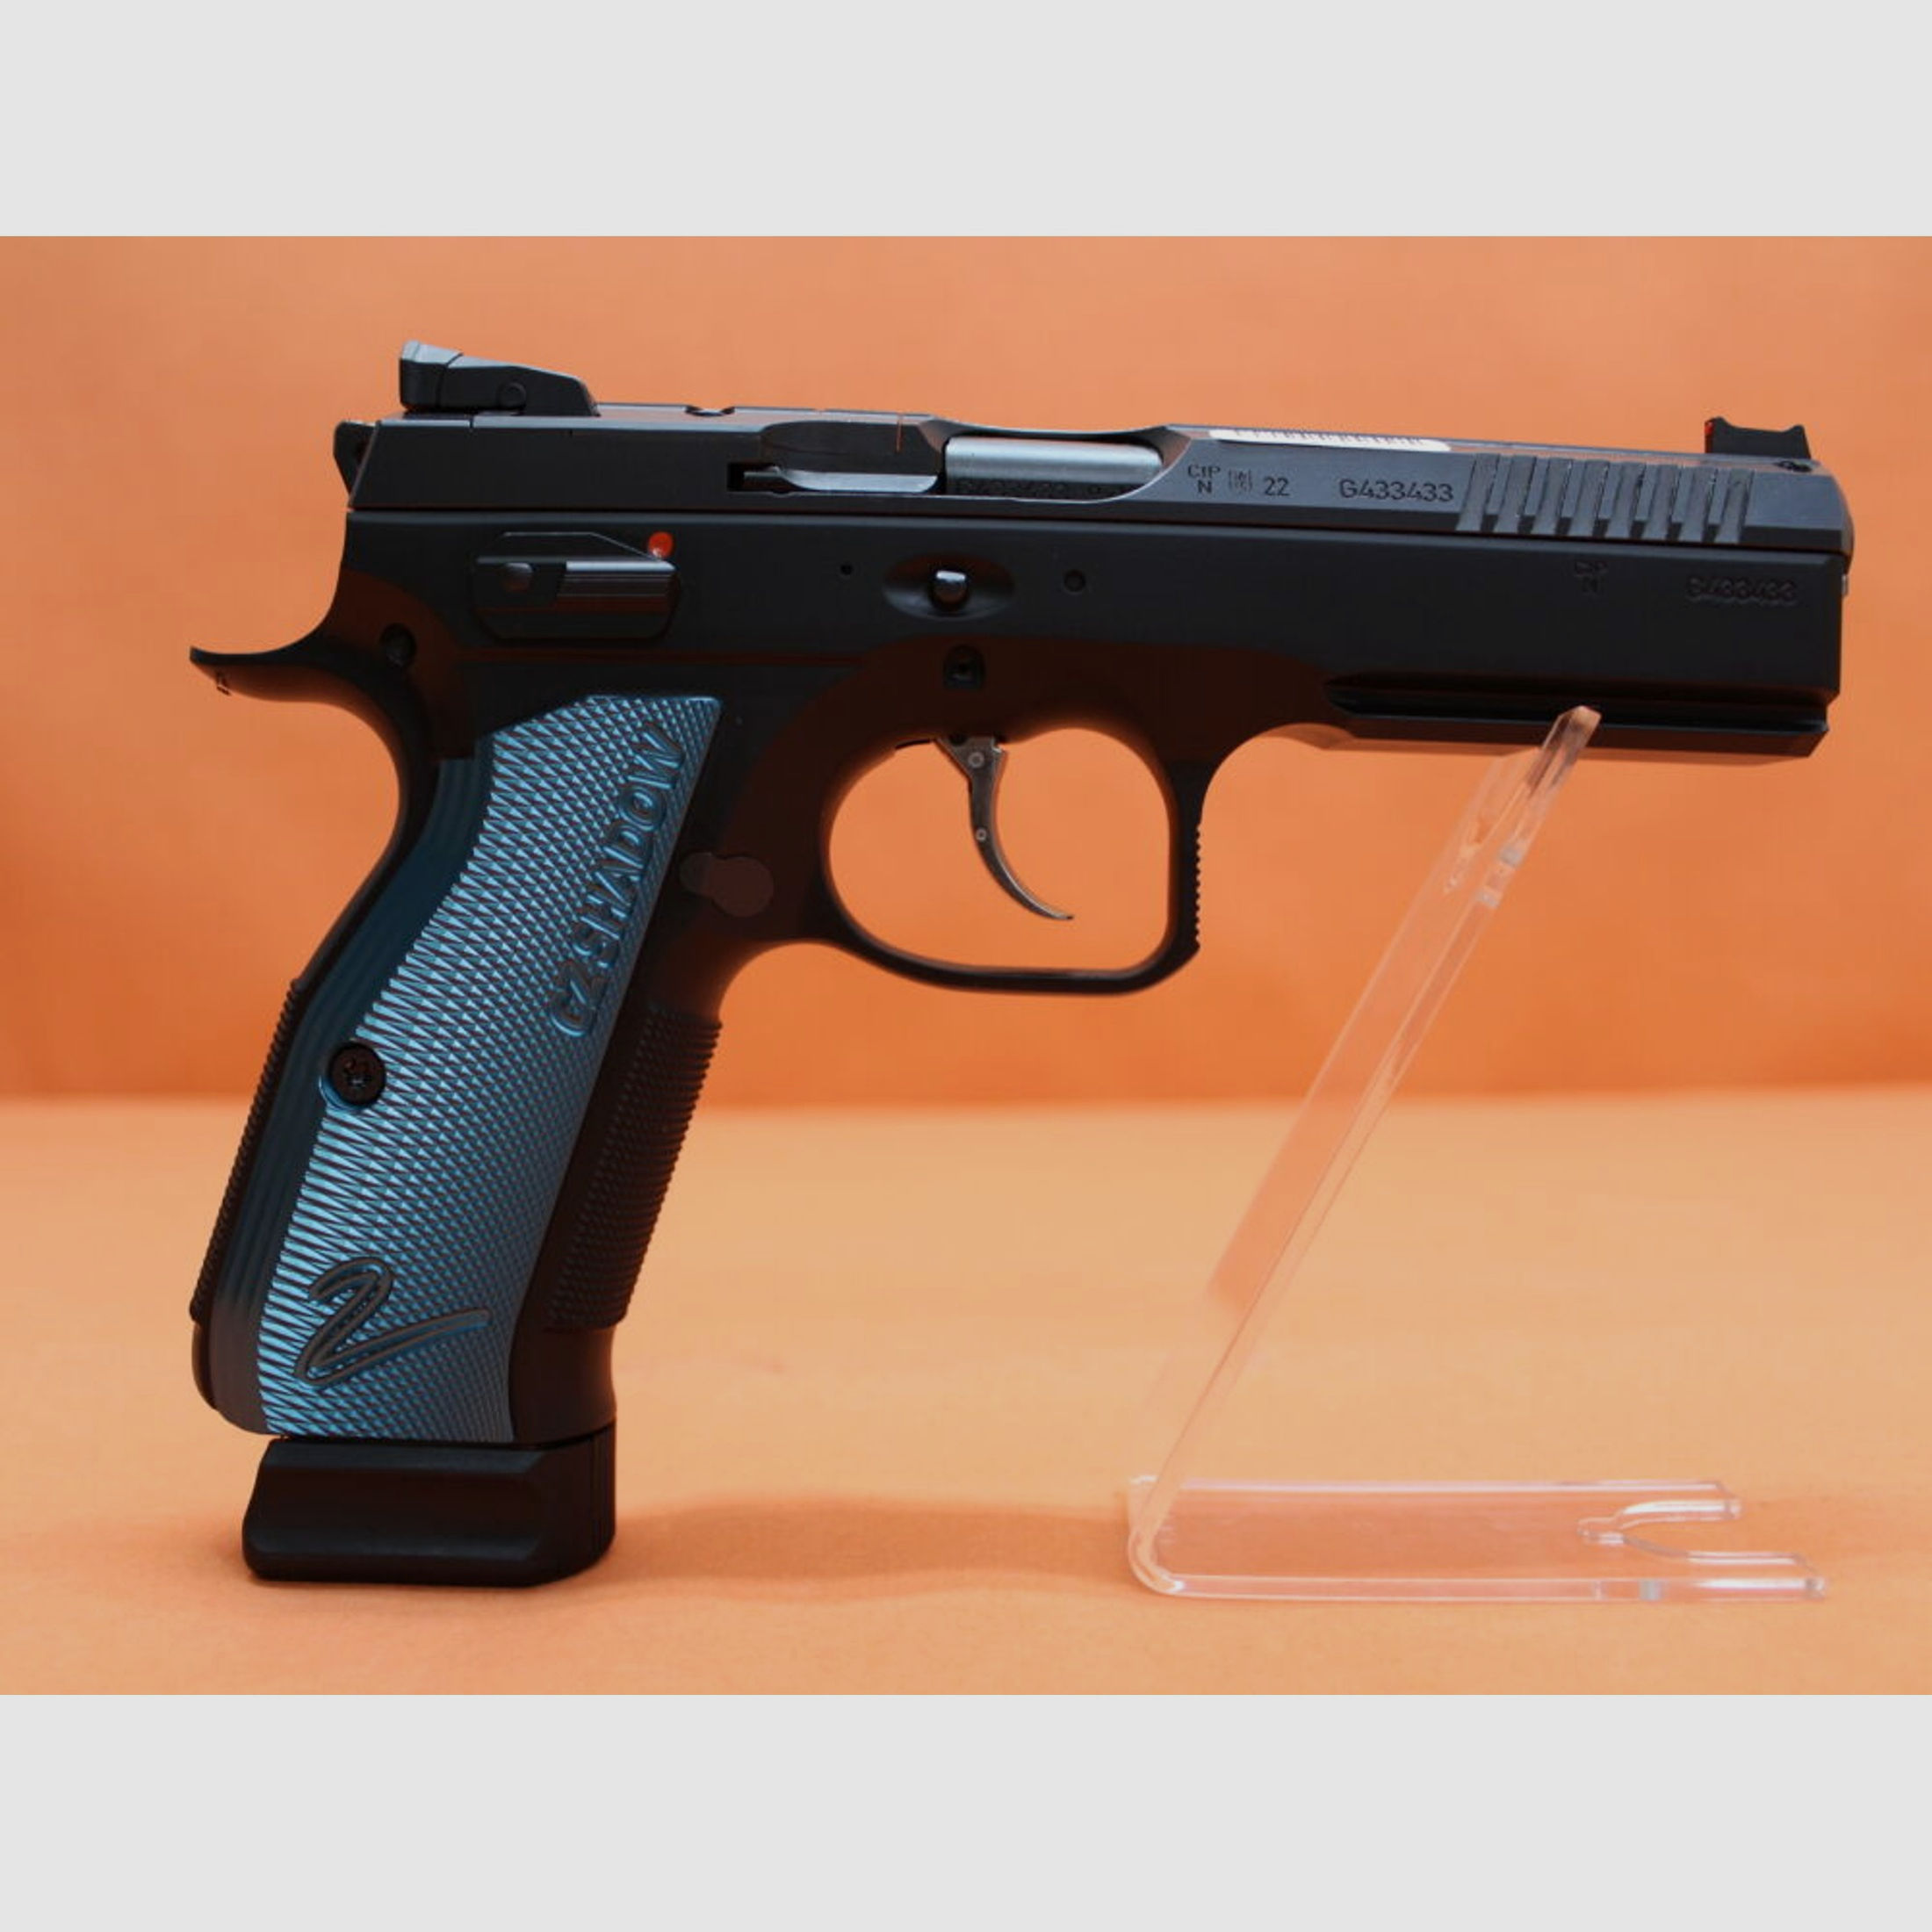 CZUB	 Ha.Pistole 9mmLuger CZUB SHADOW2 OR Optics Ready 119mm Lauf/ für Red Dot Sight (9mmPara/9x19) CZ75